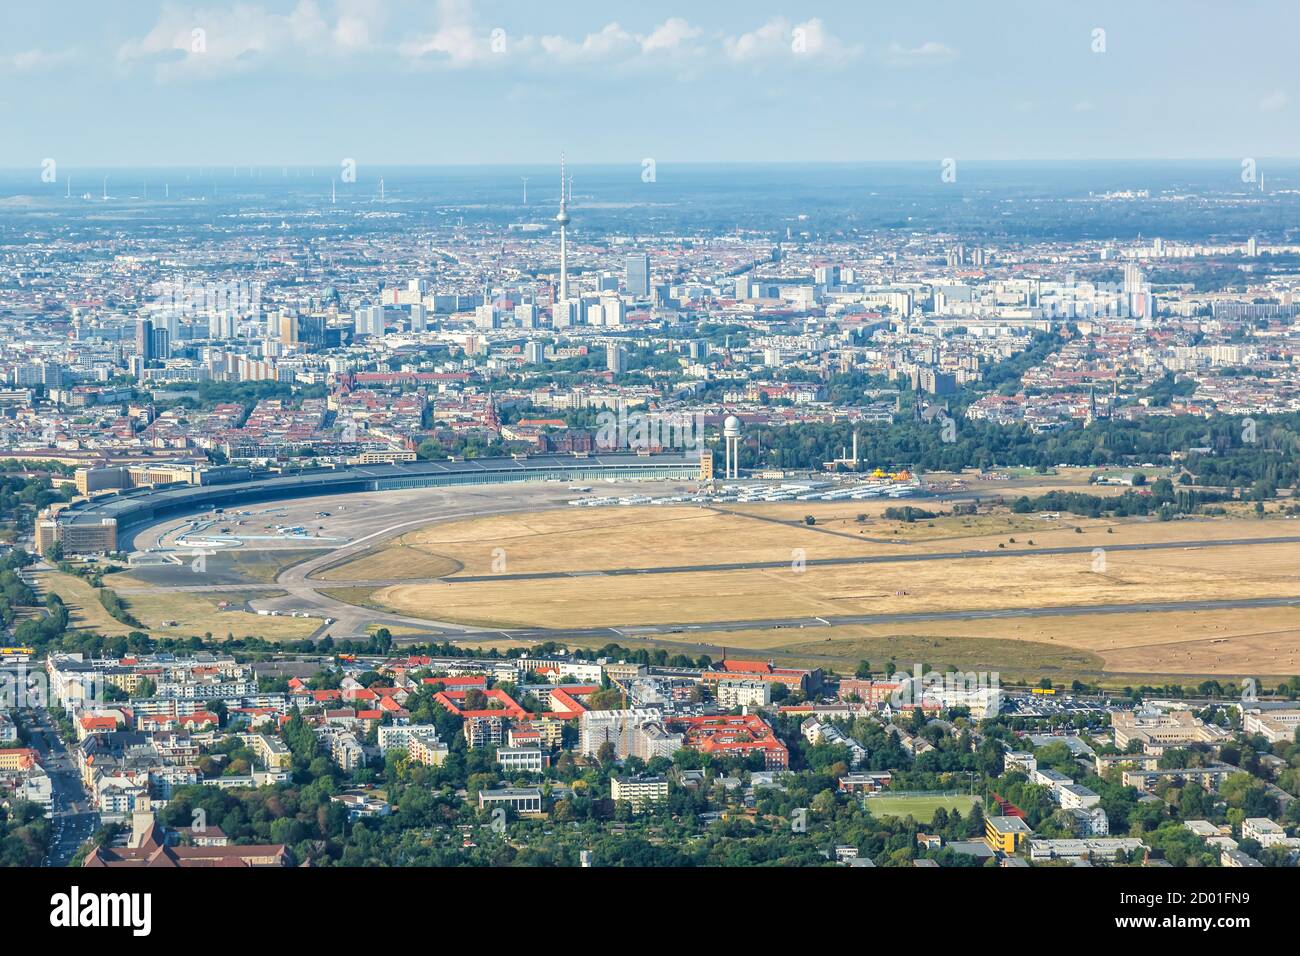 Berlin, Deutschland - 19. August 2020: Ehemaliger Flughafen Berlin Tempelhof Luftbild in Deutschland. Stockfoto